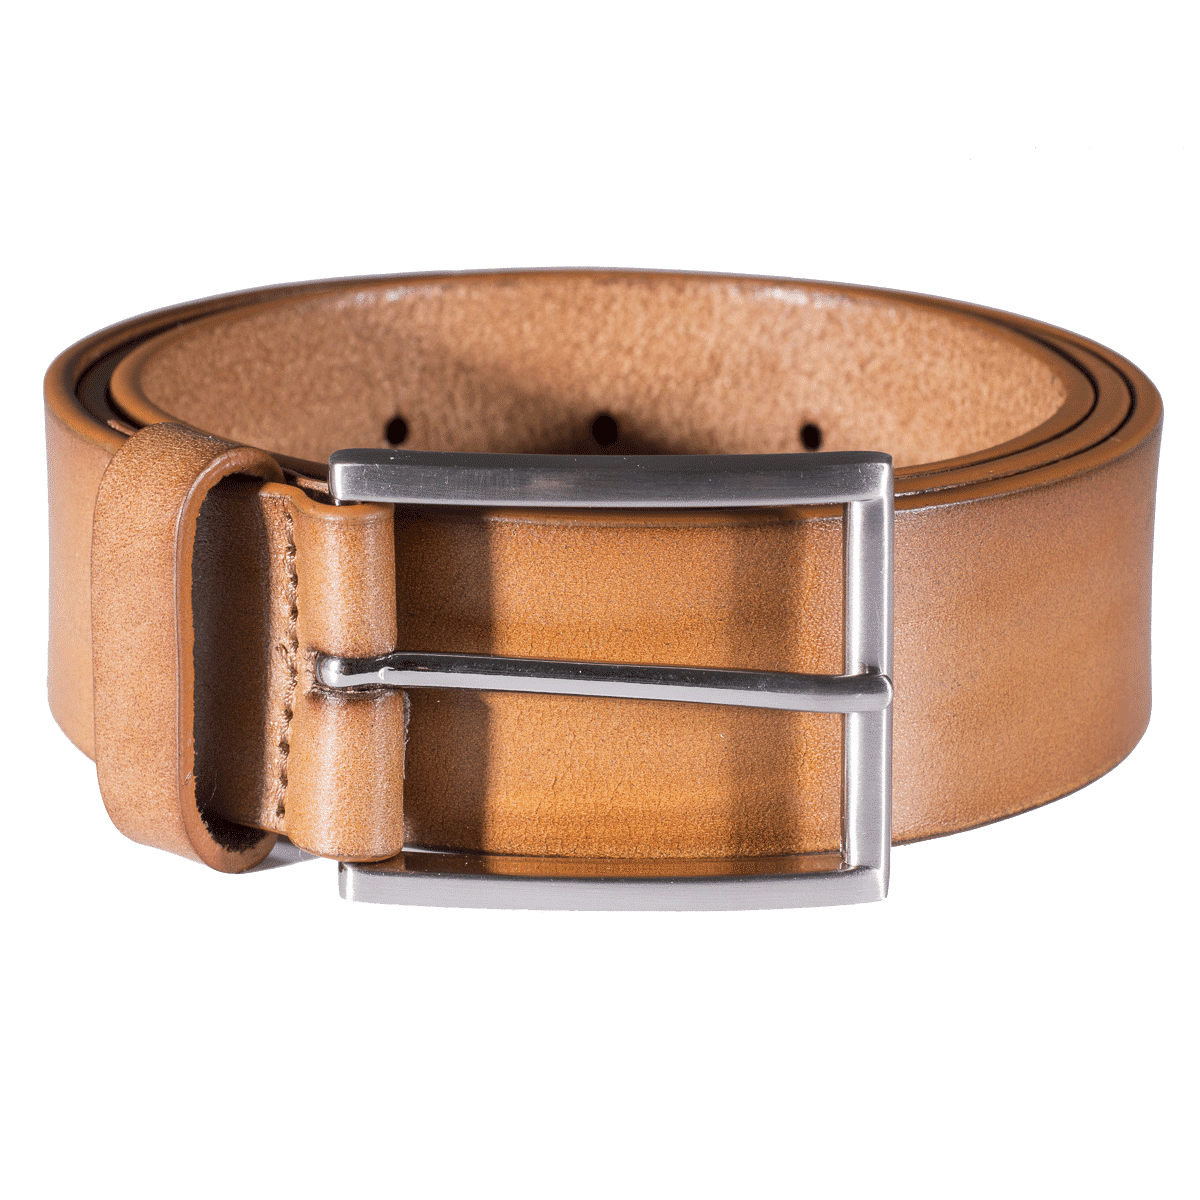 Leather Belt Transparent Image